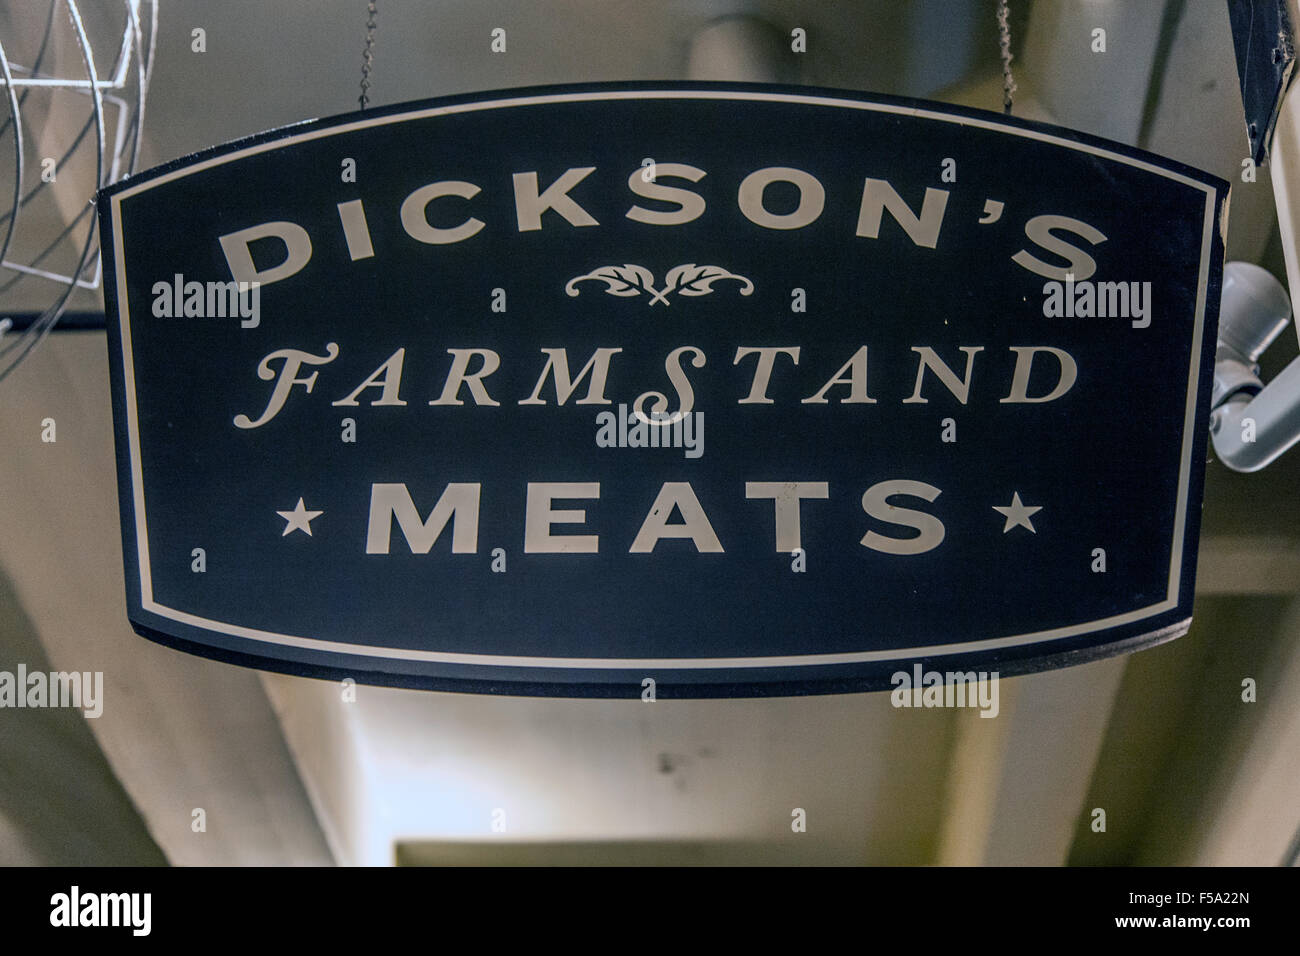 Dickson's Farmstand affettati, Chelsea mercato , Chelsea, Nw York city, Stati Uniti d'America. Foto Stock